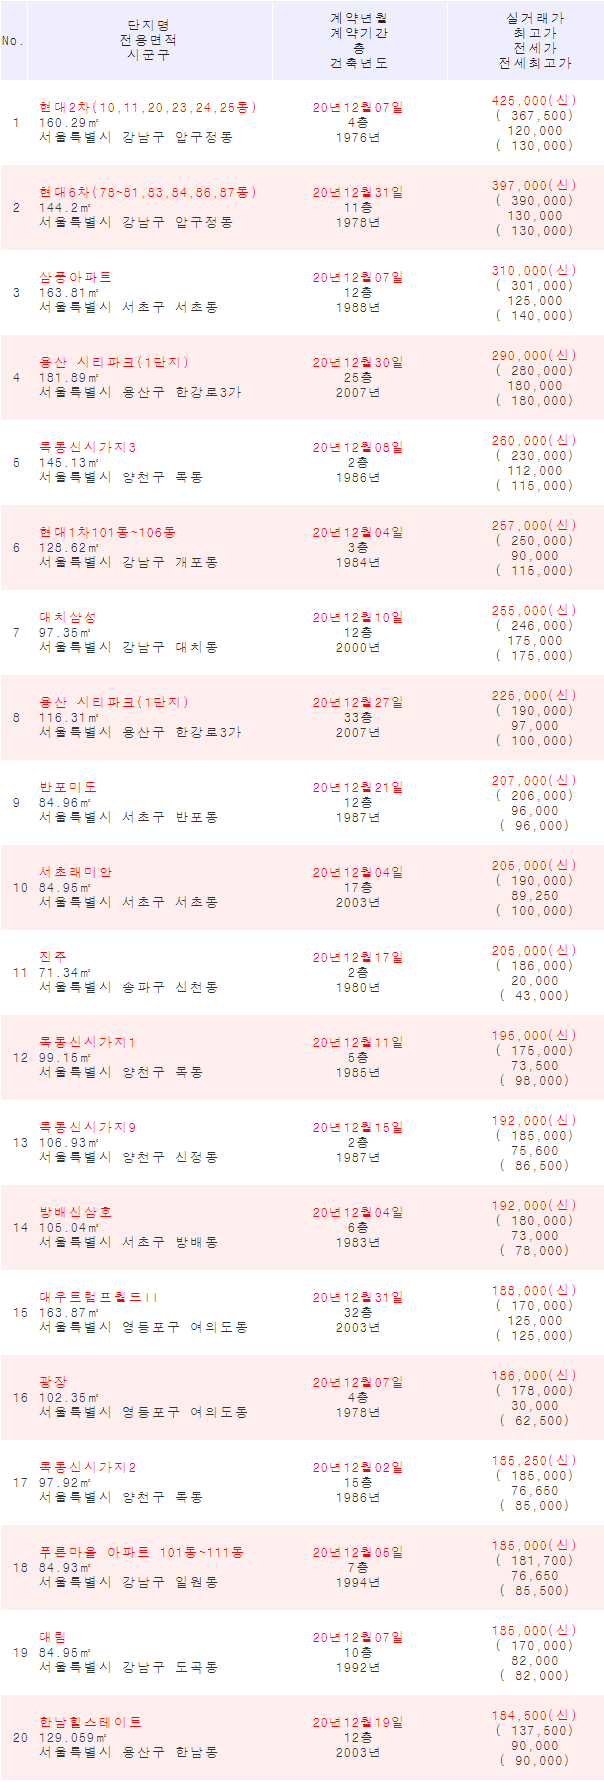 2021년 1월 1일 기준 신고가 갱신 서울아파트 매매 리스트